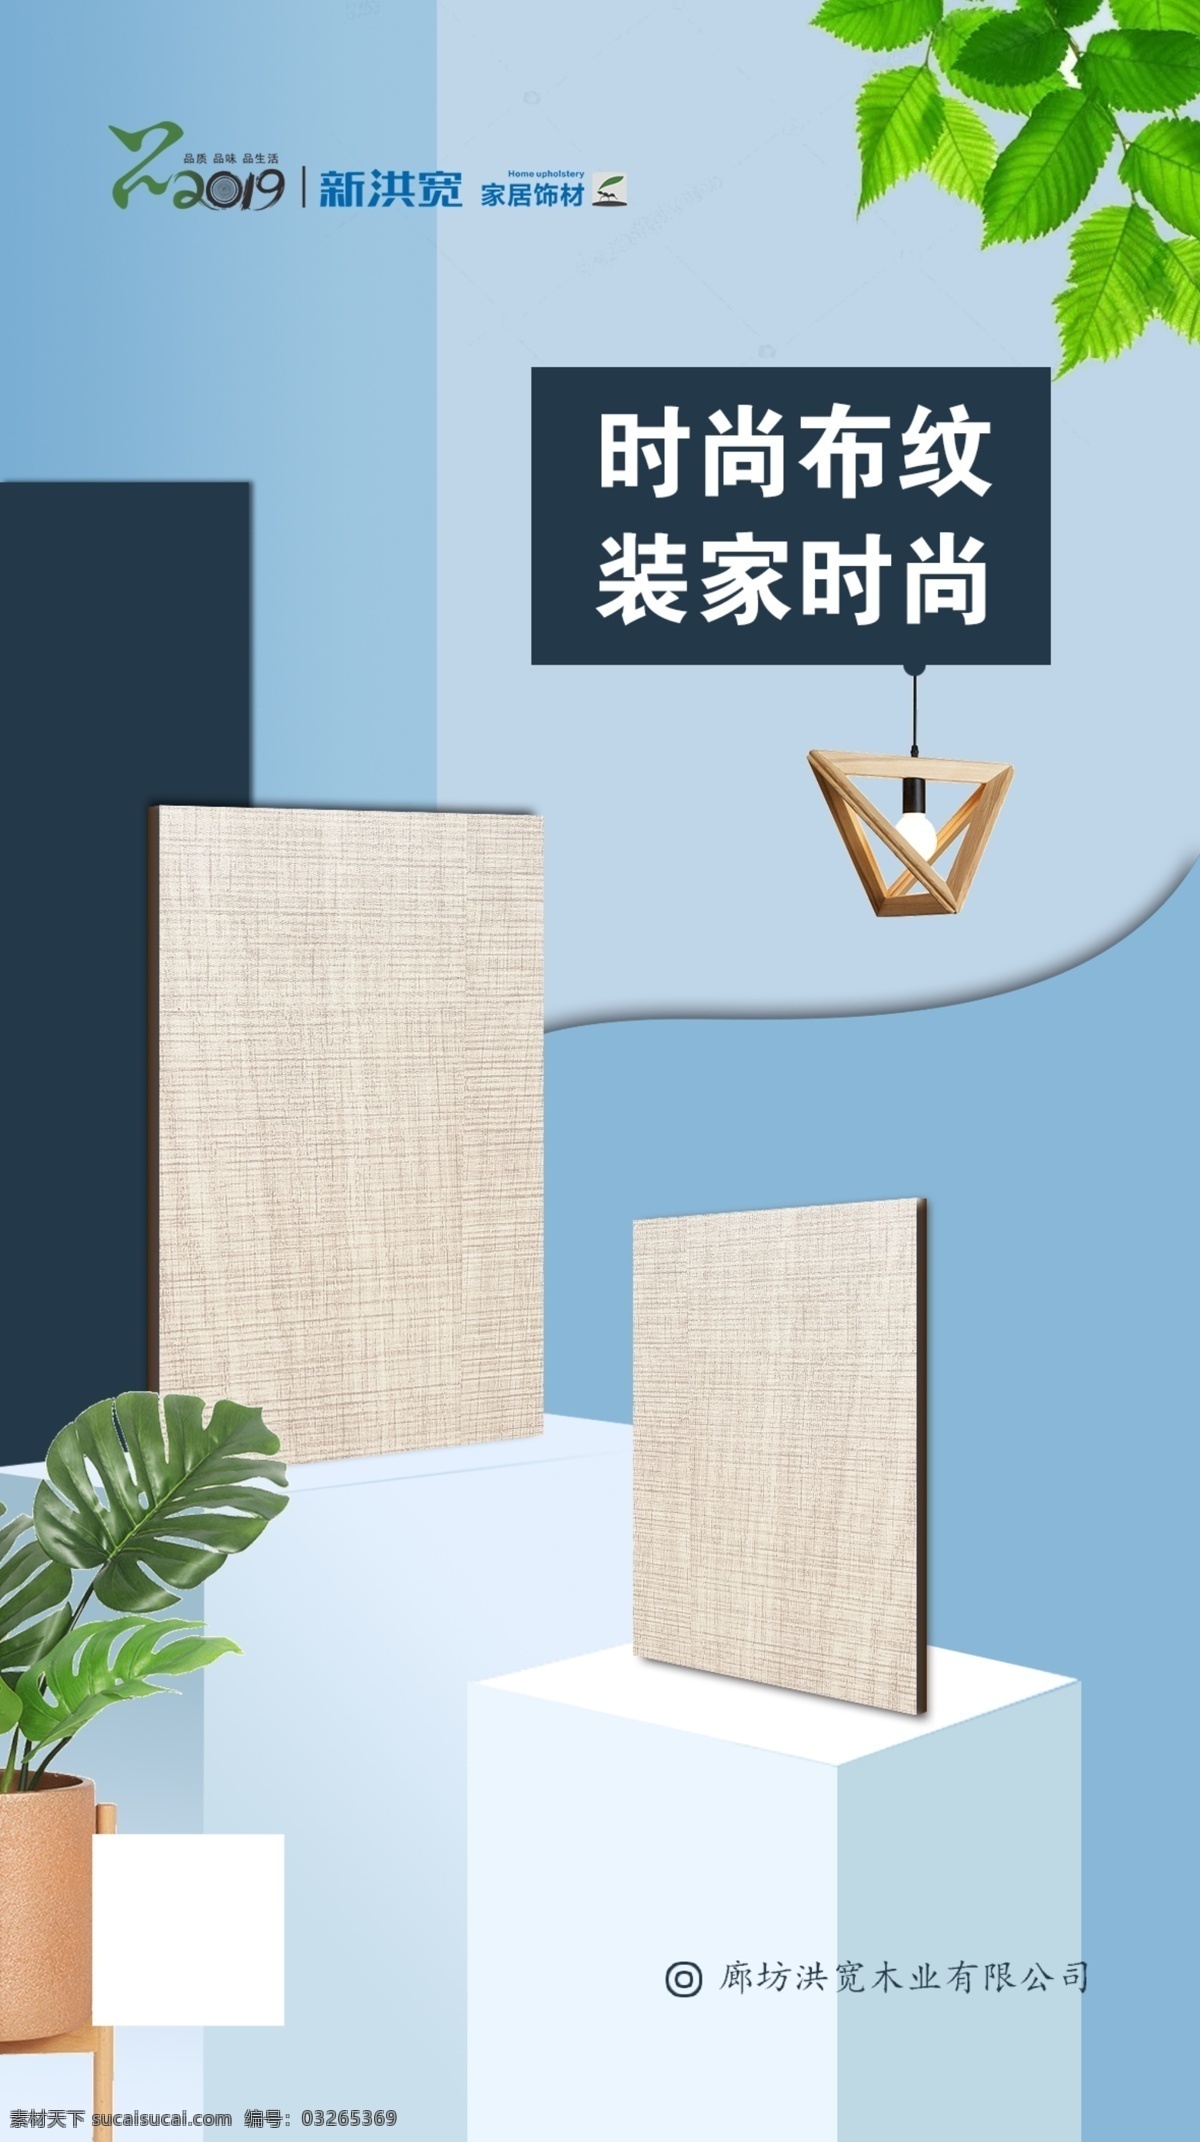 板材海报 淘宝背景图 木材 家具 木板 手机宣传图